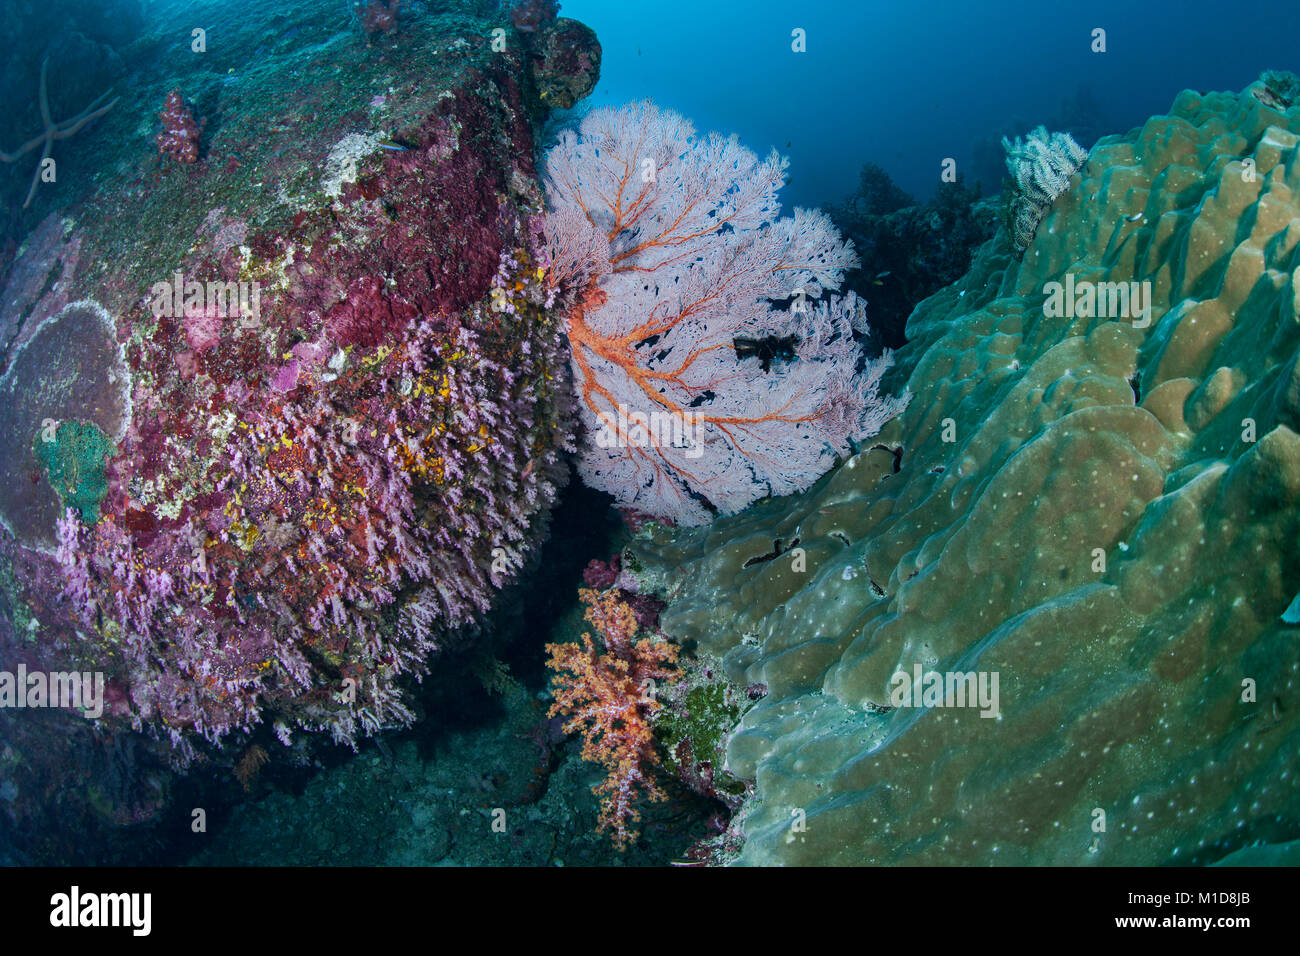 Arrecifes de coral en Elephant Head Rock sitio de buceo en el Mar de Andaman, Tailandia. Diciembre, 2017. Todavía hermosa, pero hay signos de enfermedades de coral. Foto de stock